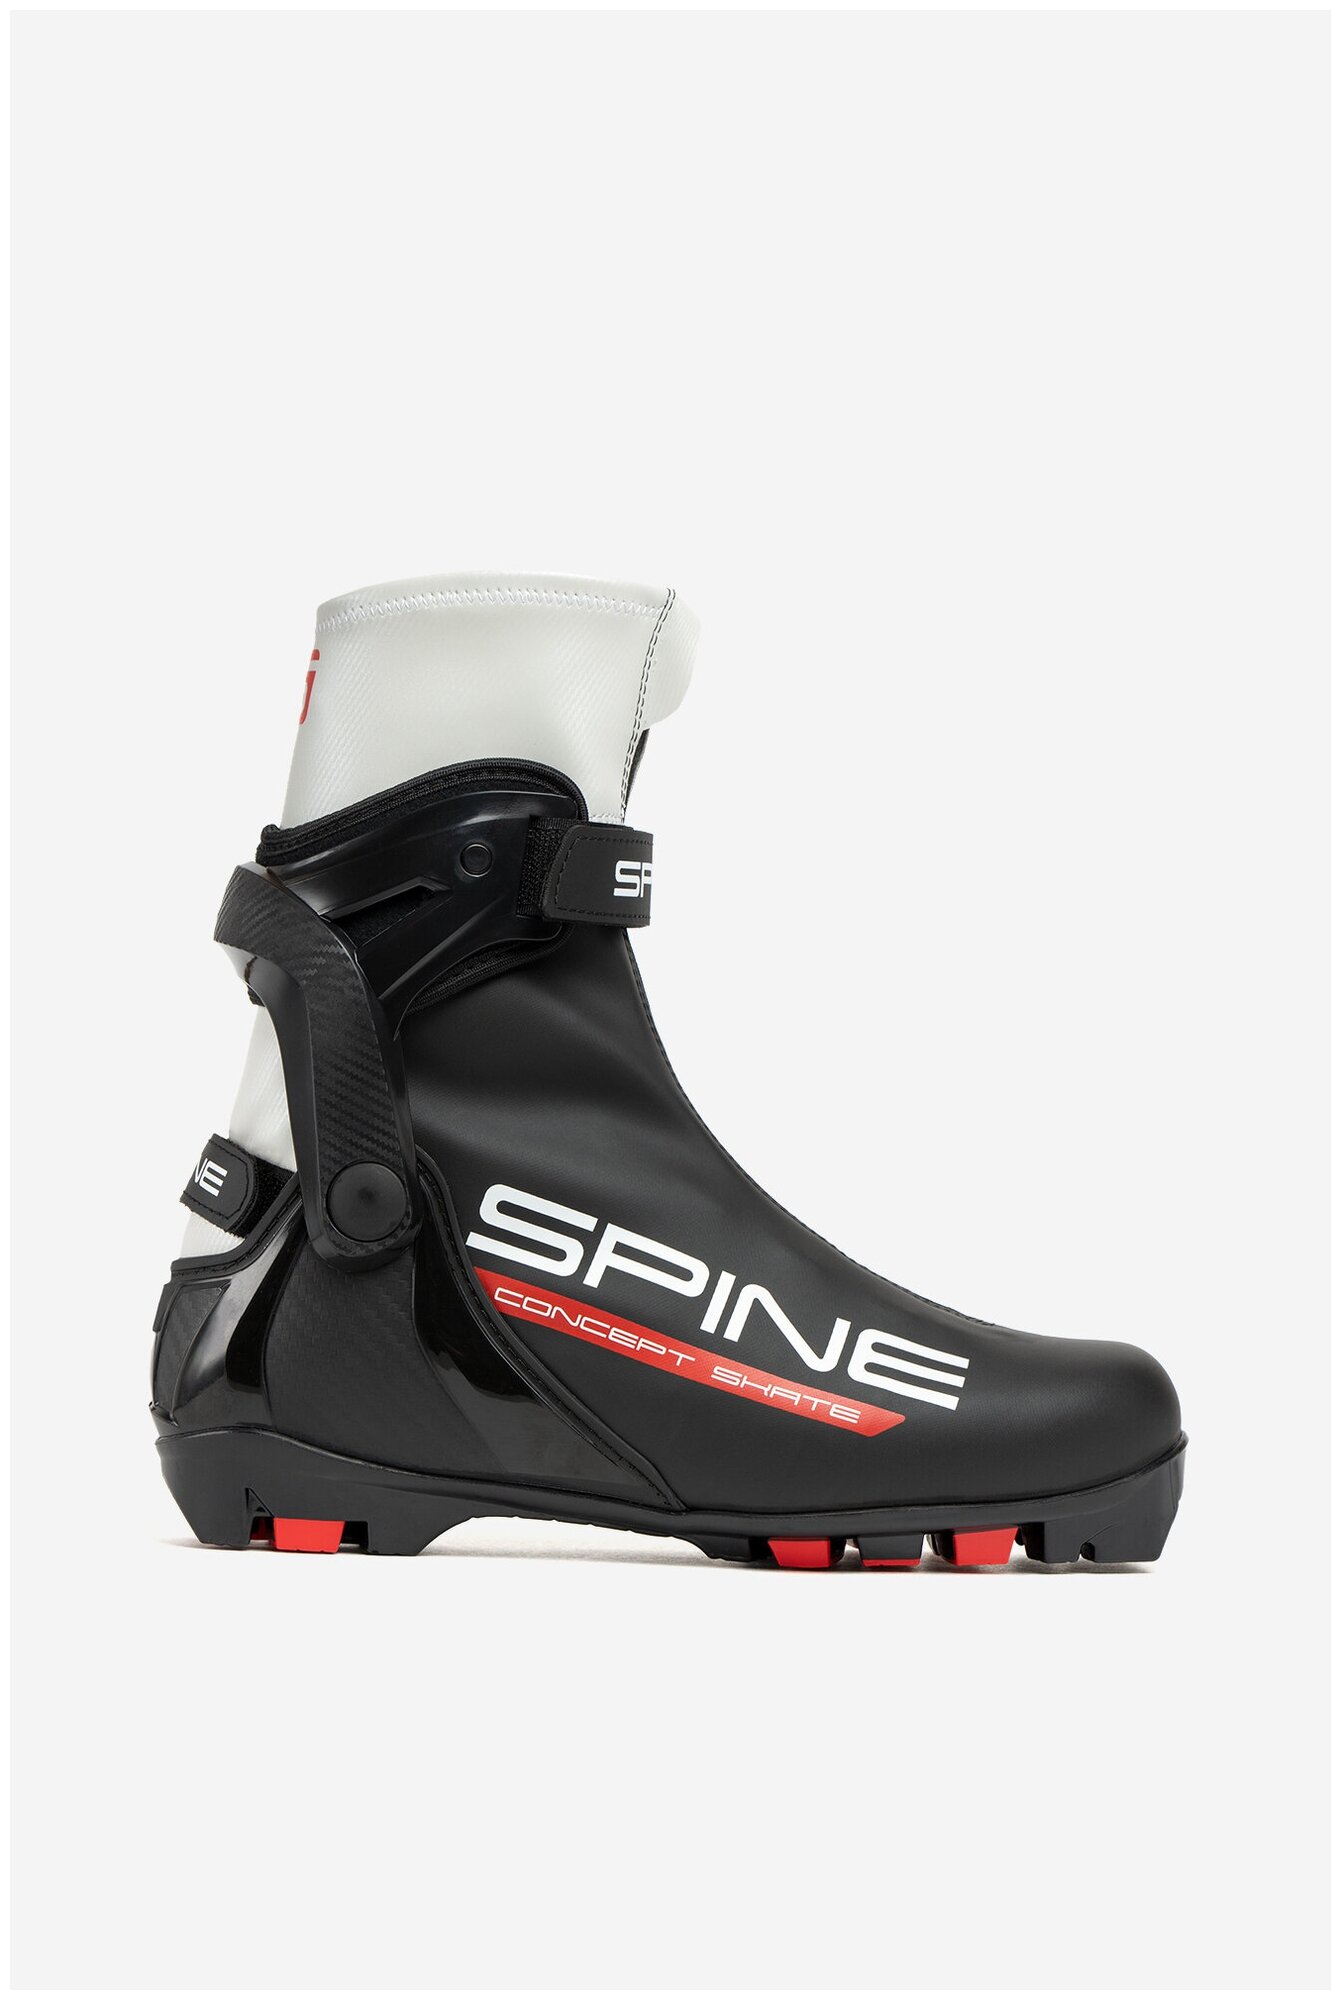   Spine Concept Skate 296-22 NNN (.47)